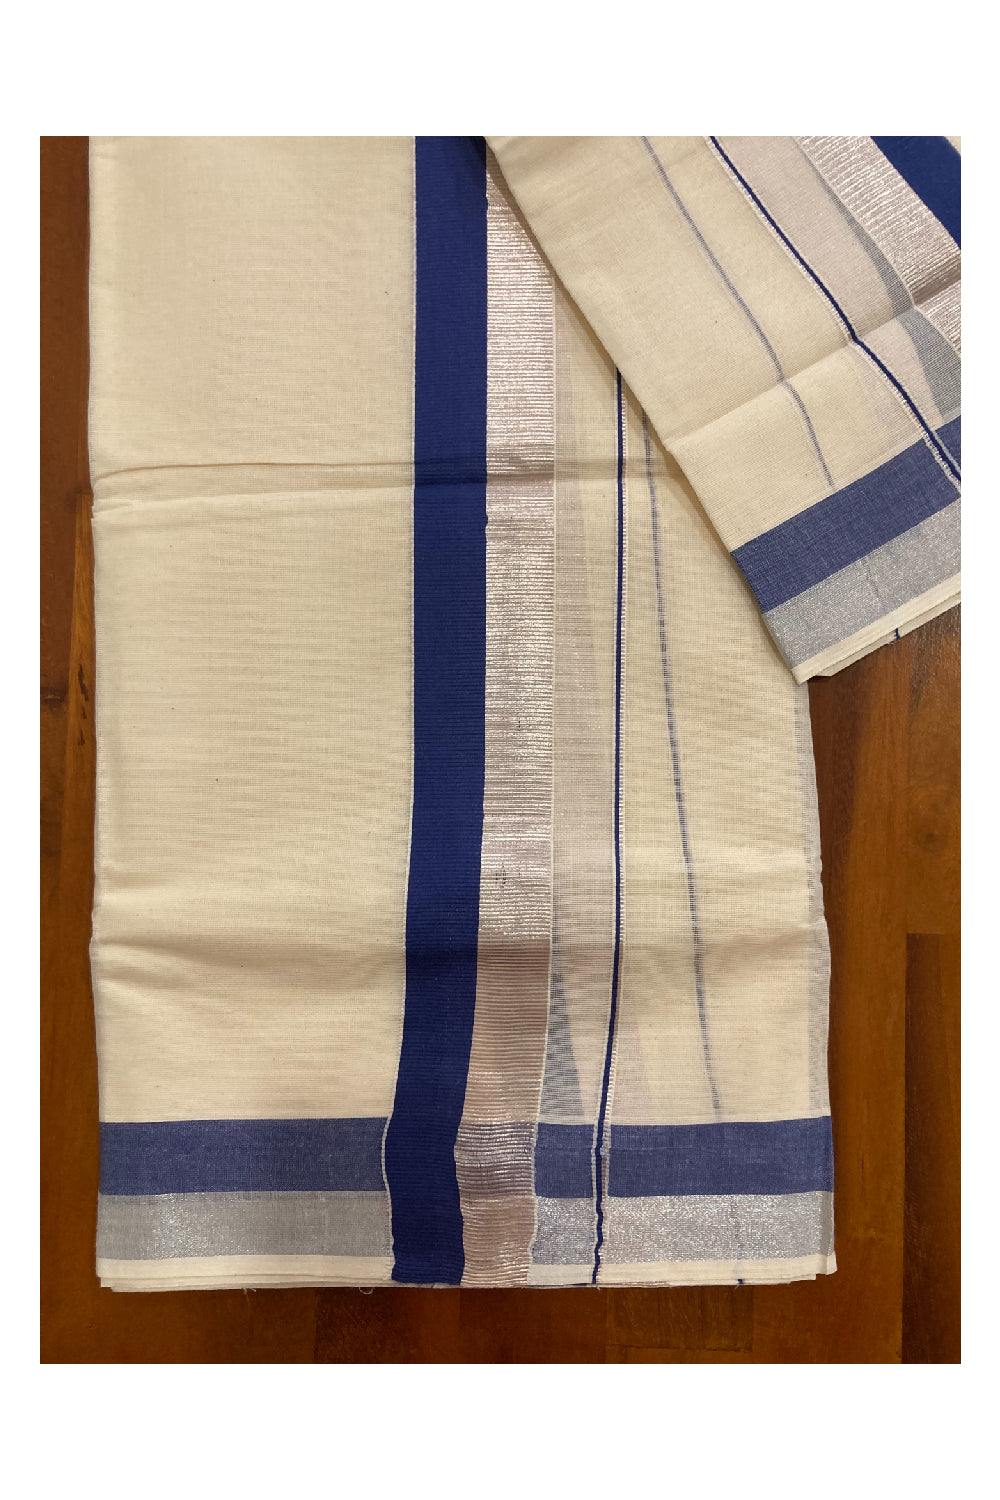 Kerala Cotton Double Set Mundu with Blue and Silver Kasavu Border (2.80 m Mundum Neriyathum)